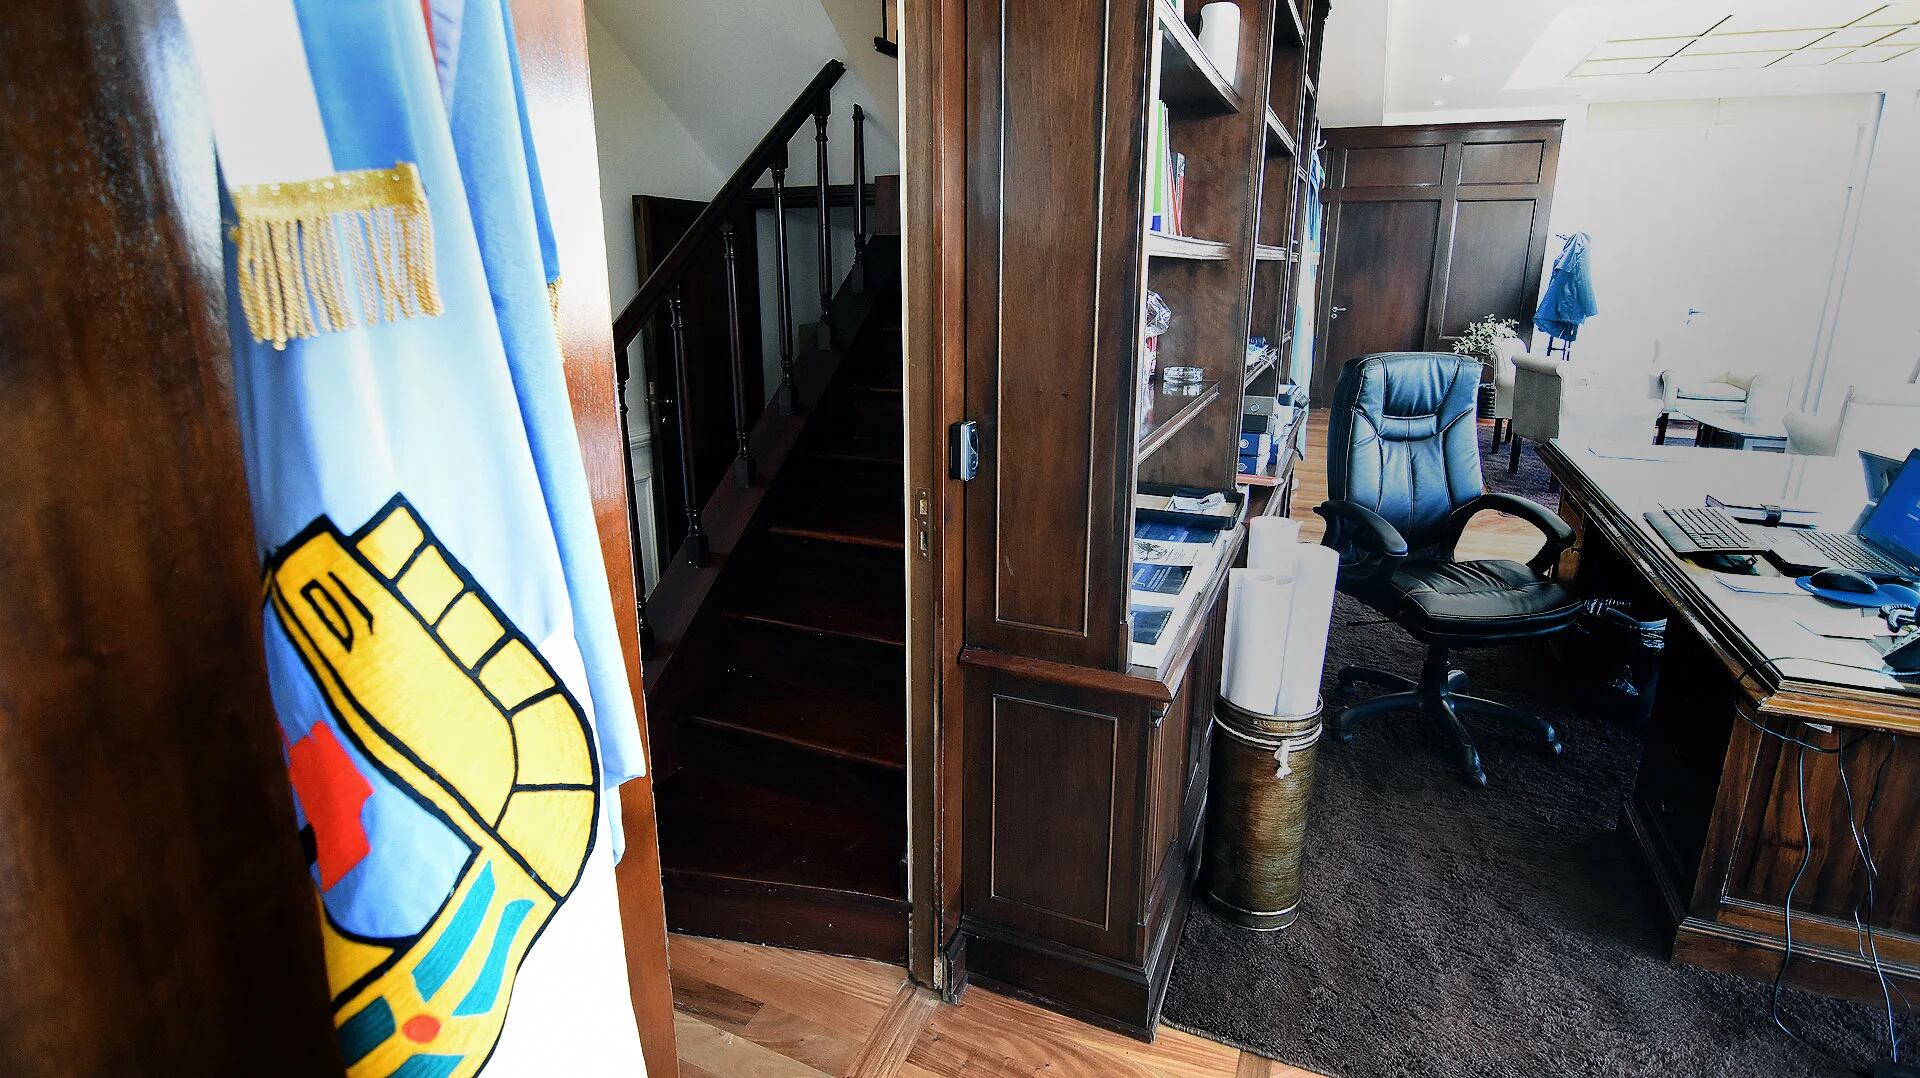 Tras ganar las elecciones, Leonardo Nardini descubrió que había una puerta oculta en el despacho de la intendencia de Malvinas Argentinas (Nicolás Stulberg)